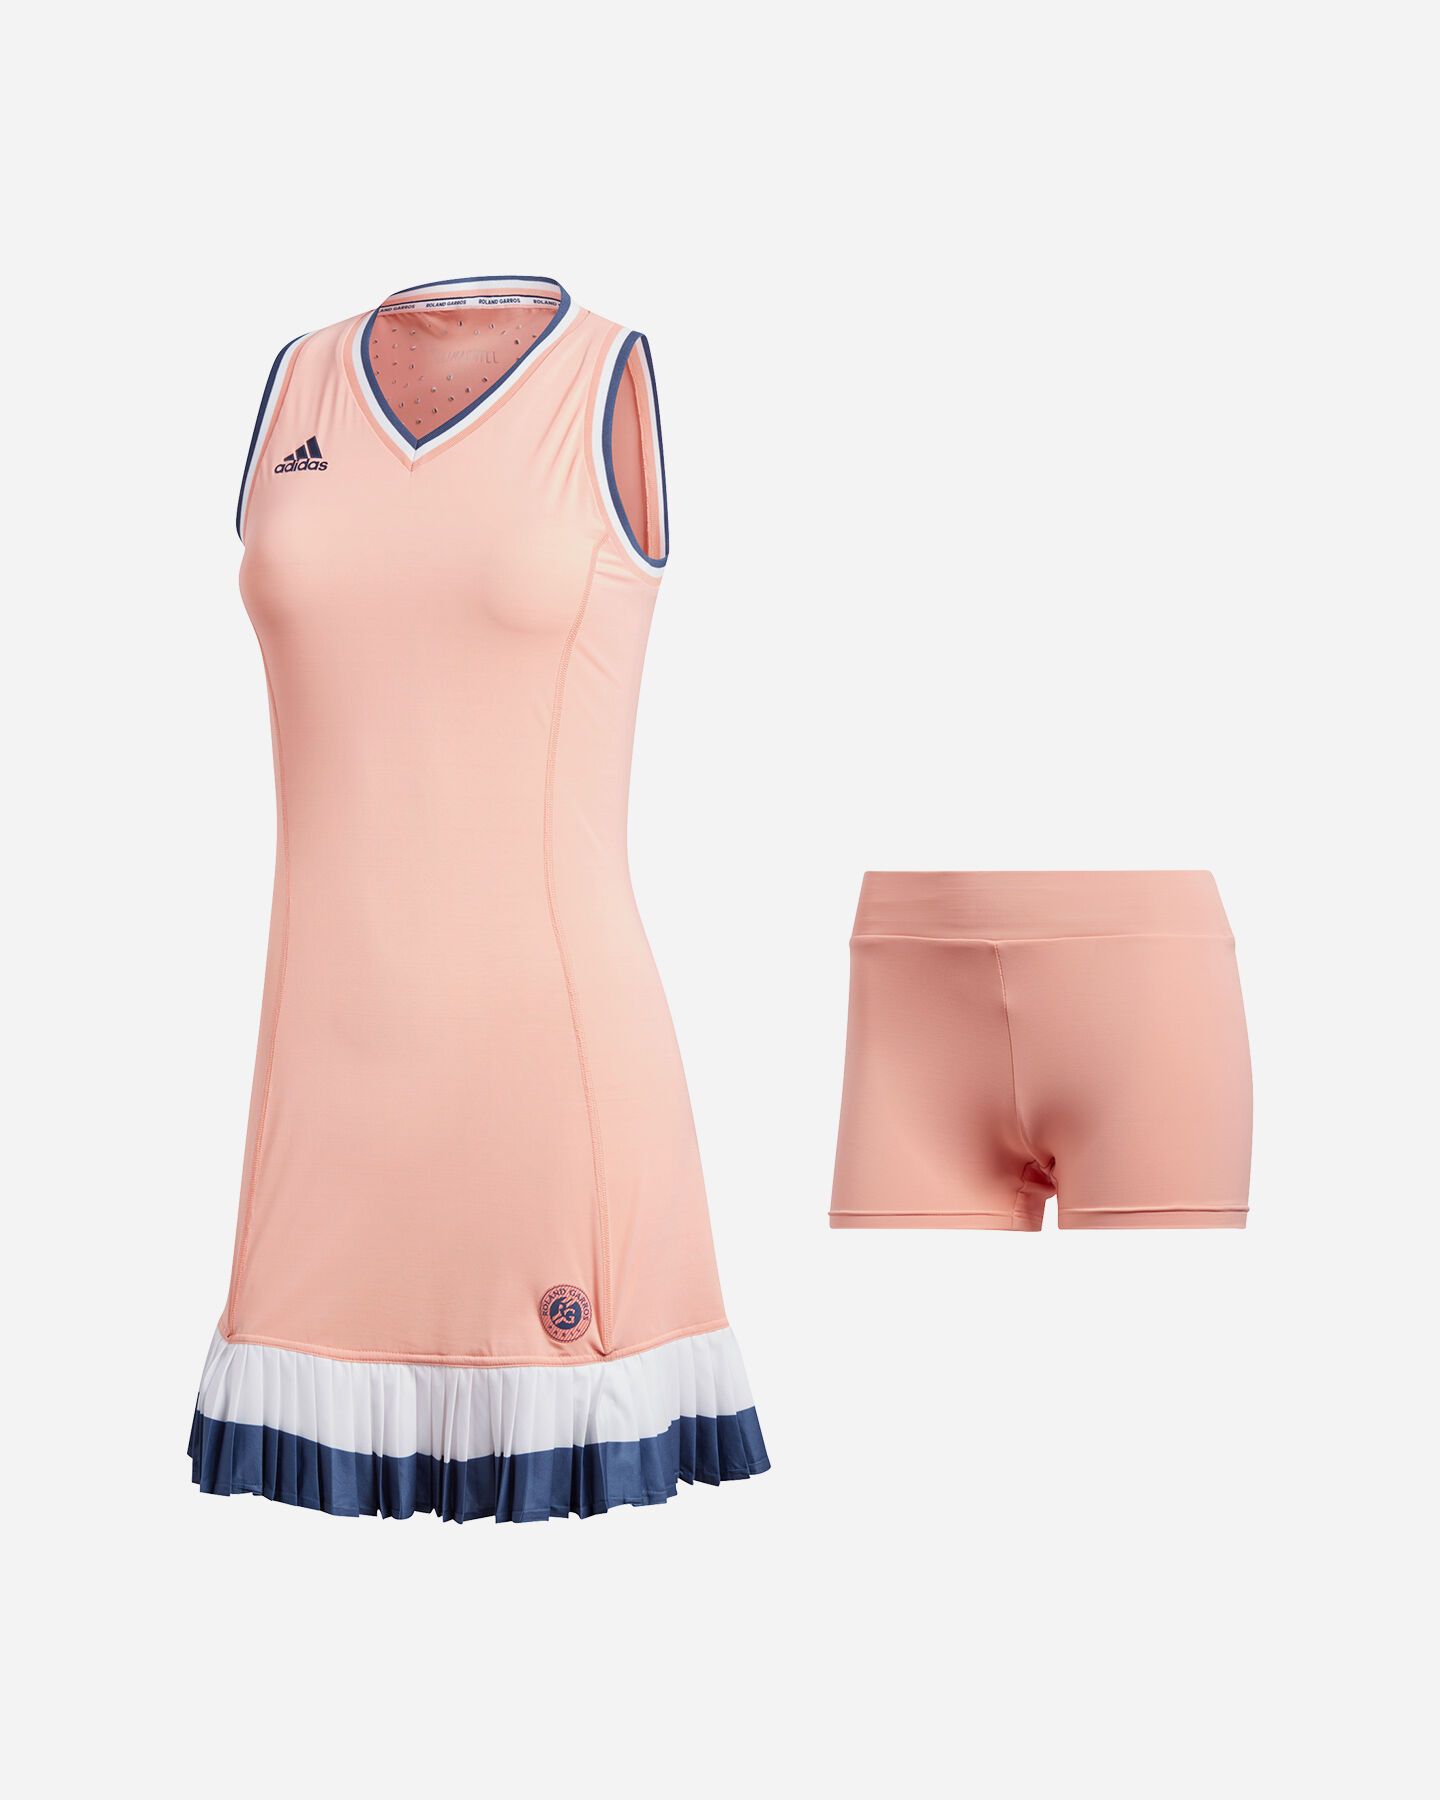 abbigliamento tennis adidas